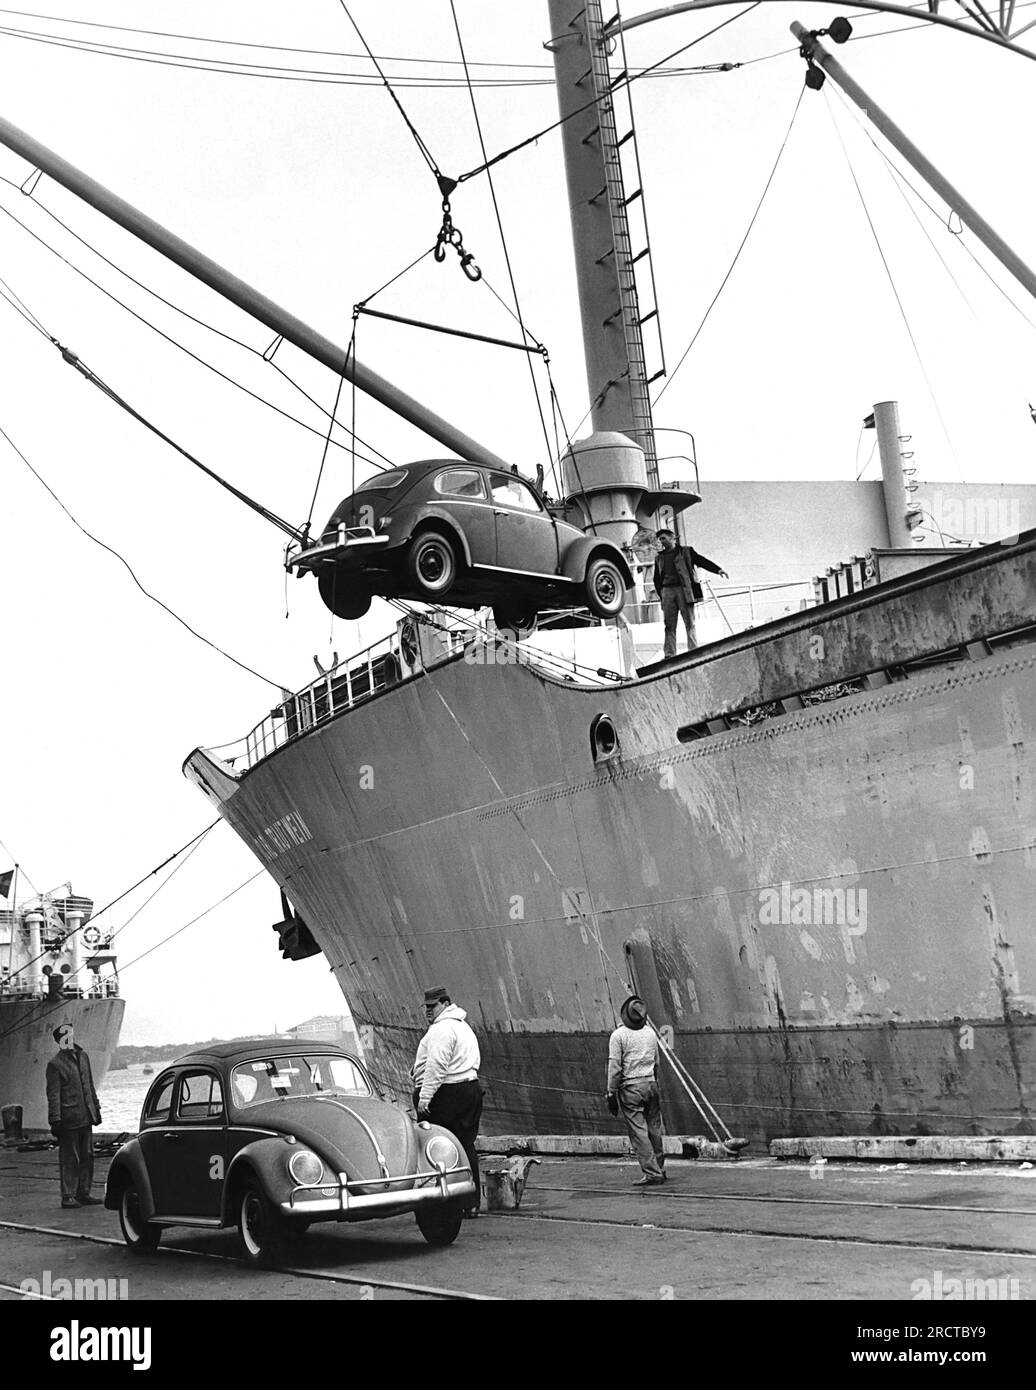 Vereinigte Staaten von Amerika: c. 1962 das Autotransportschiff M.S. Carl Trautwein entlädt seine Ladung von 1250 Volkswagen. So eine Schiffsladung kommt jeden Tag irgendwo in den USA an. Stockfoto